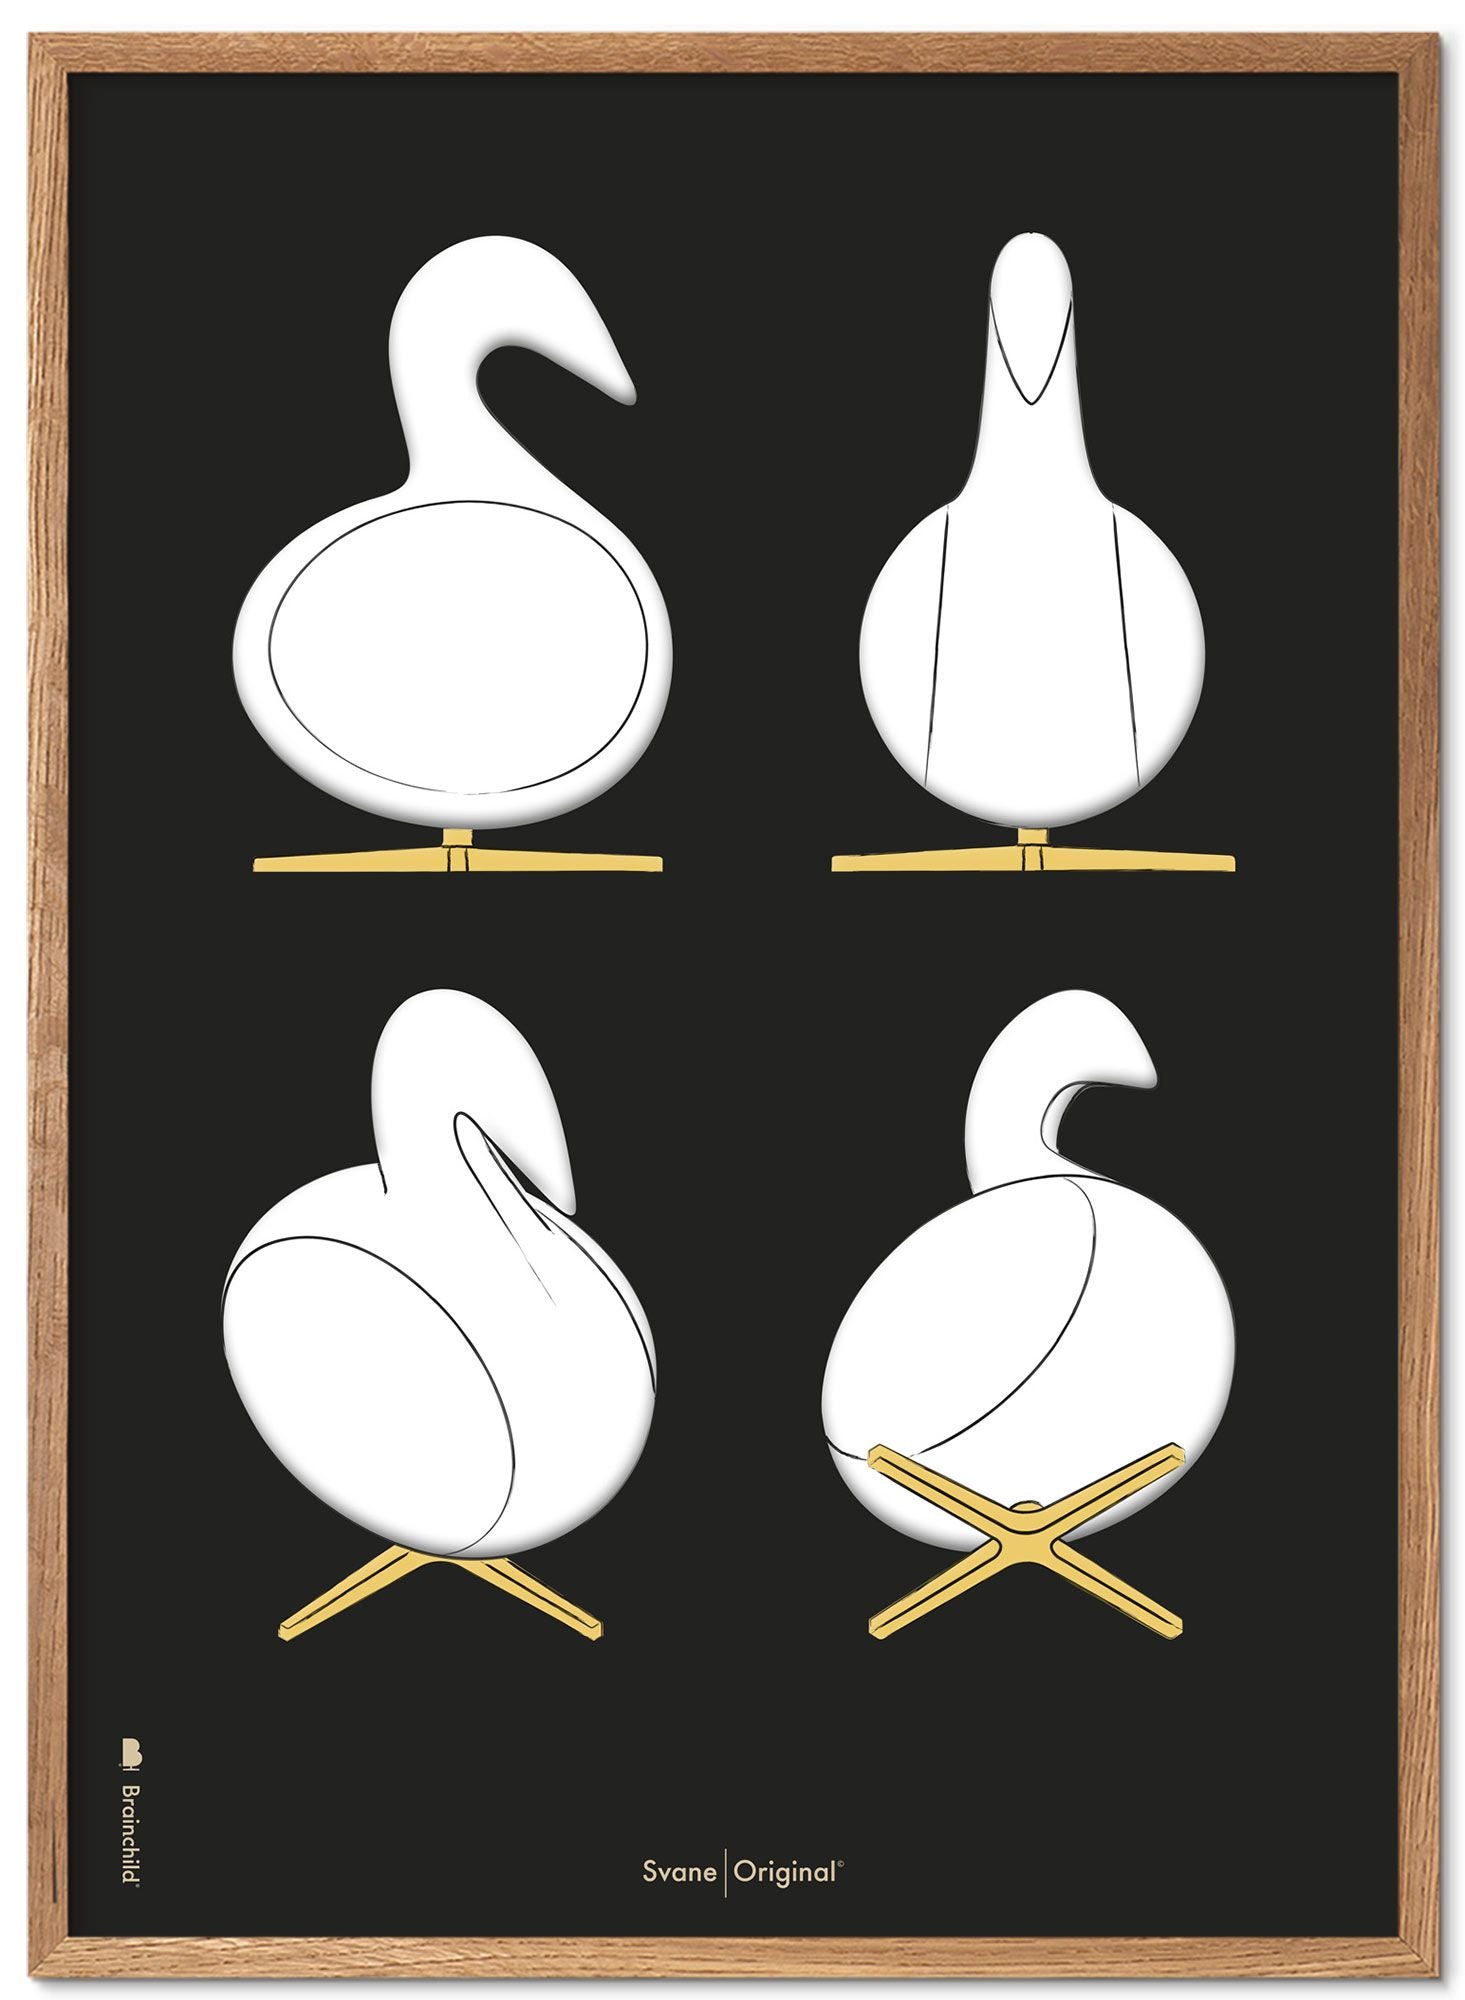 Brainchild Swan Design Sketches Poster Frame lavet af let træ A5, sort baggrund